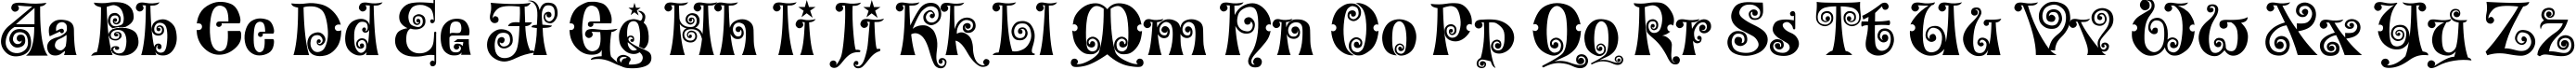 Пример написания английского алфавита шрифтом Wonderland